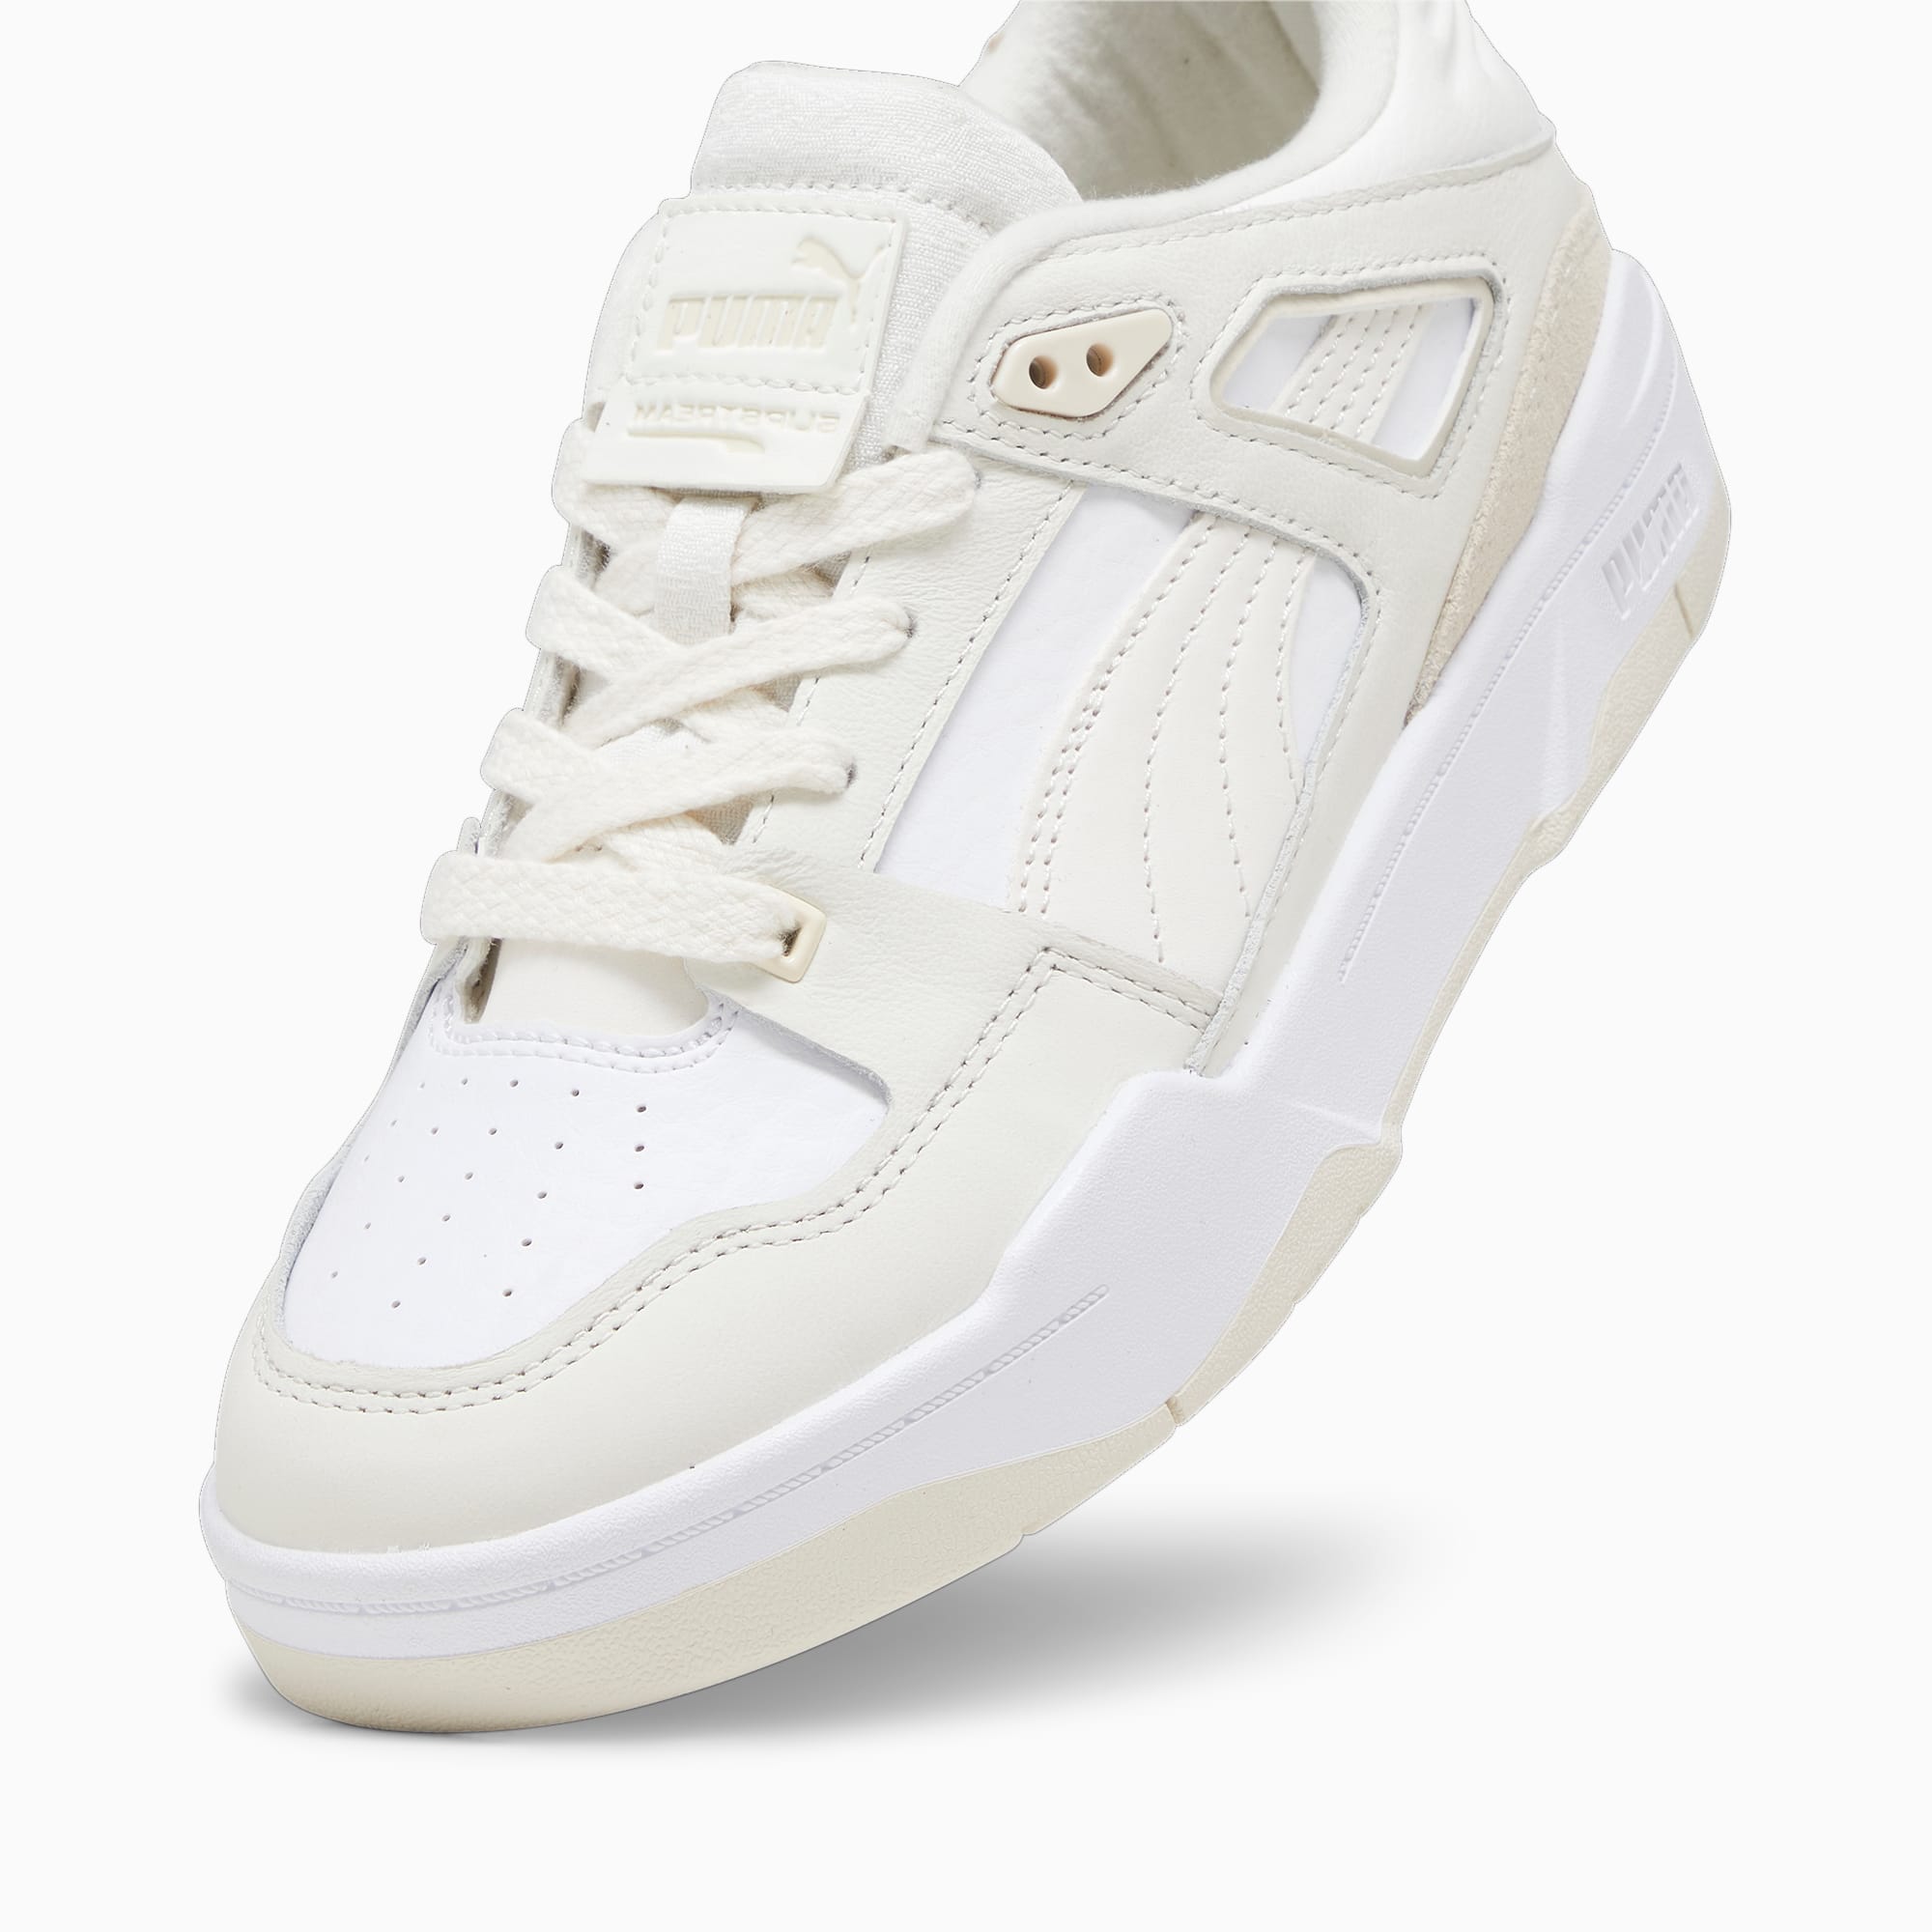 Puma Slipstream Lo Self-Love Women's Sneakers, White/Warm White, 7